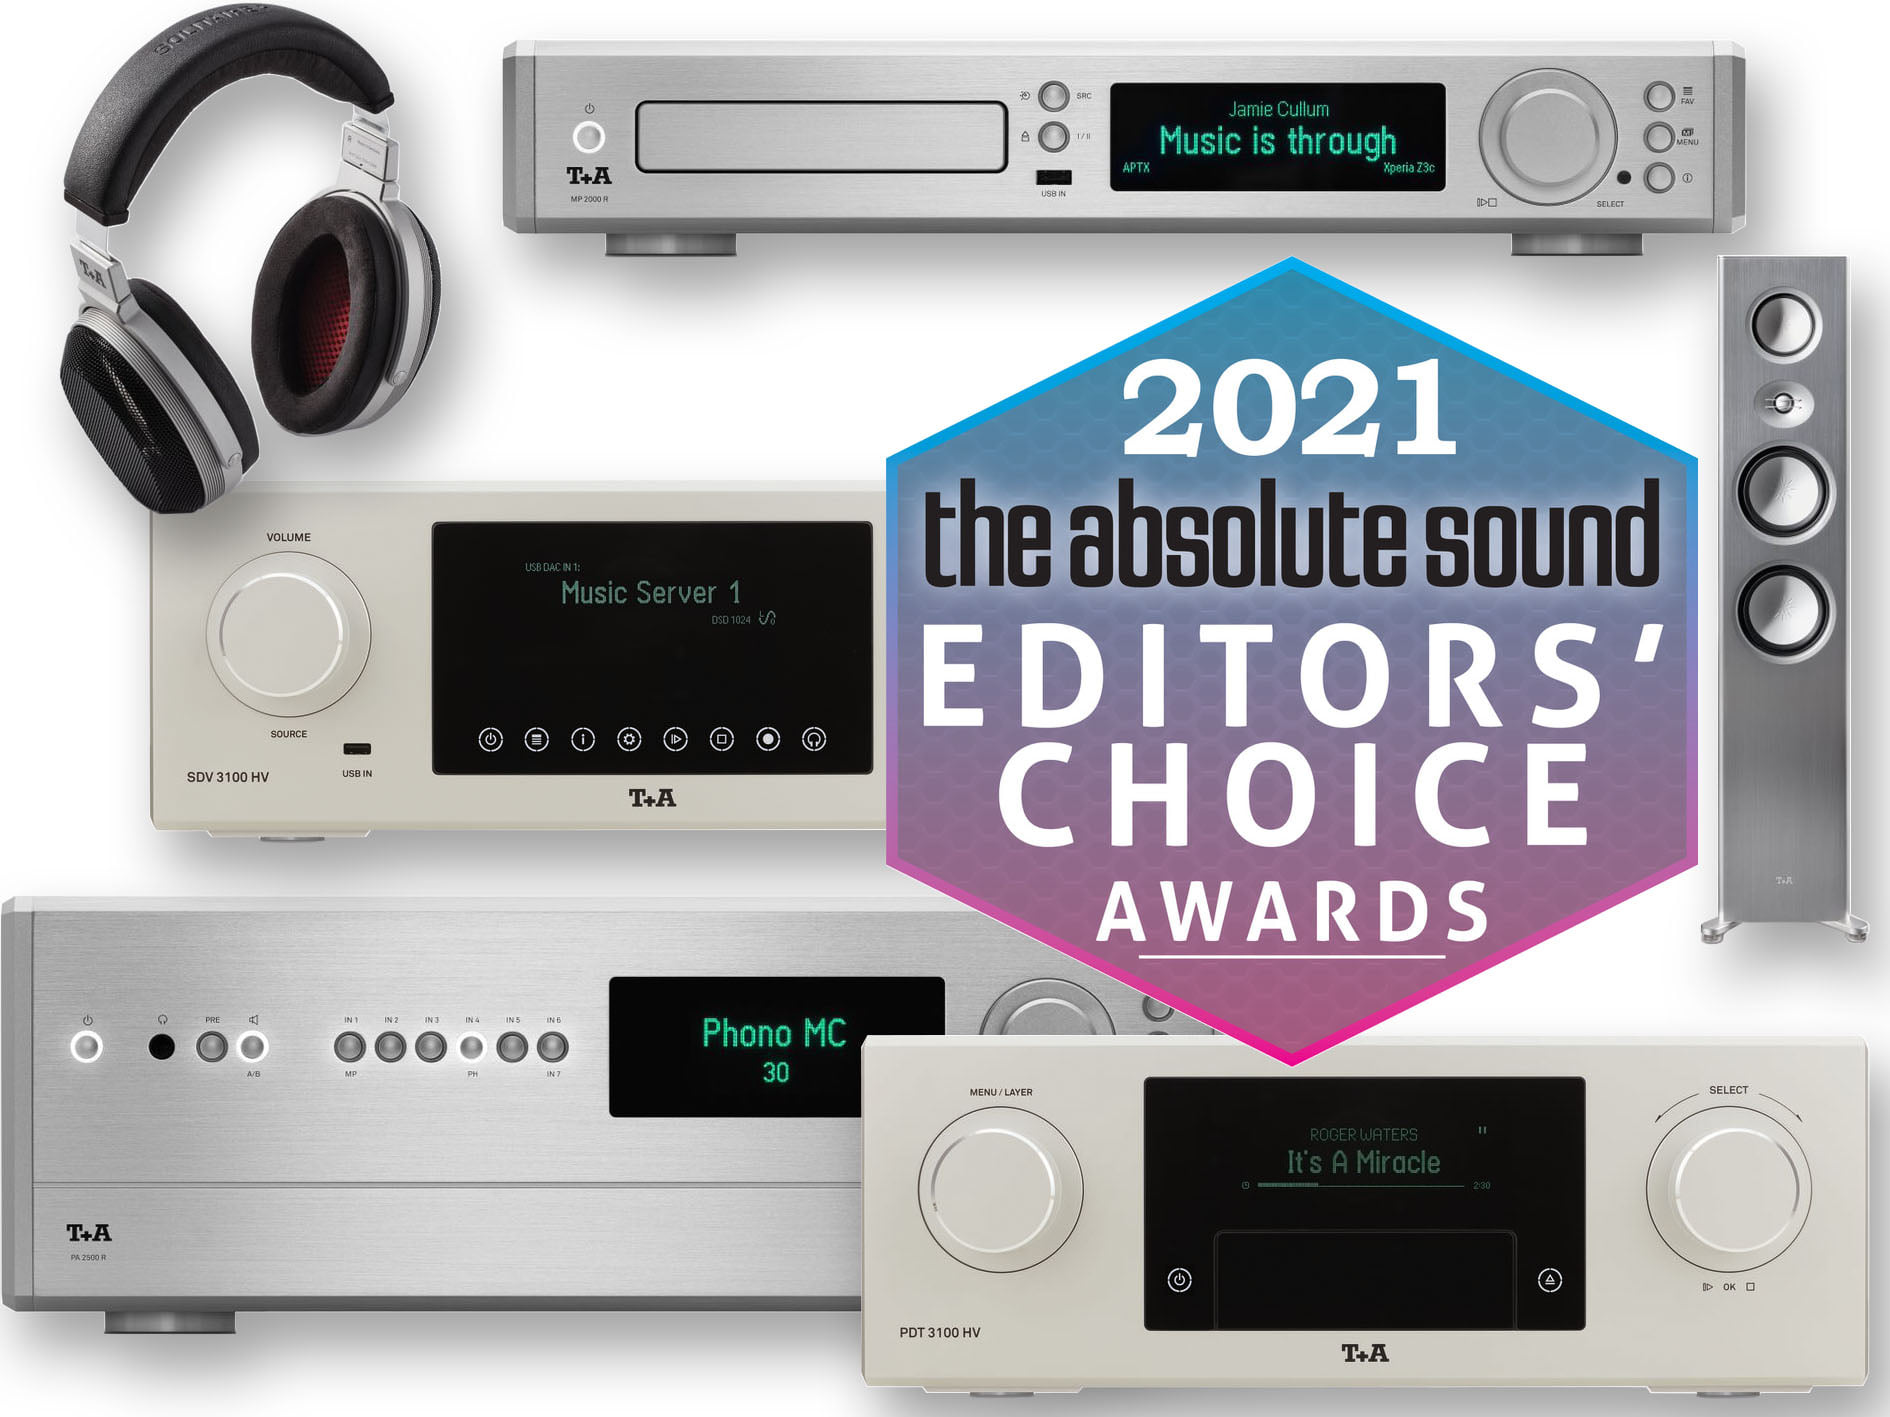 коллекция трофеев немецкого производителя Т+А была пополнена шестью наградами «Выбор редакции» издания The Absolute Sound